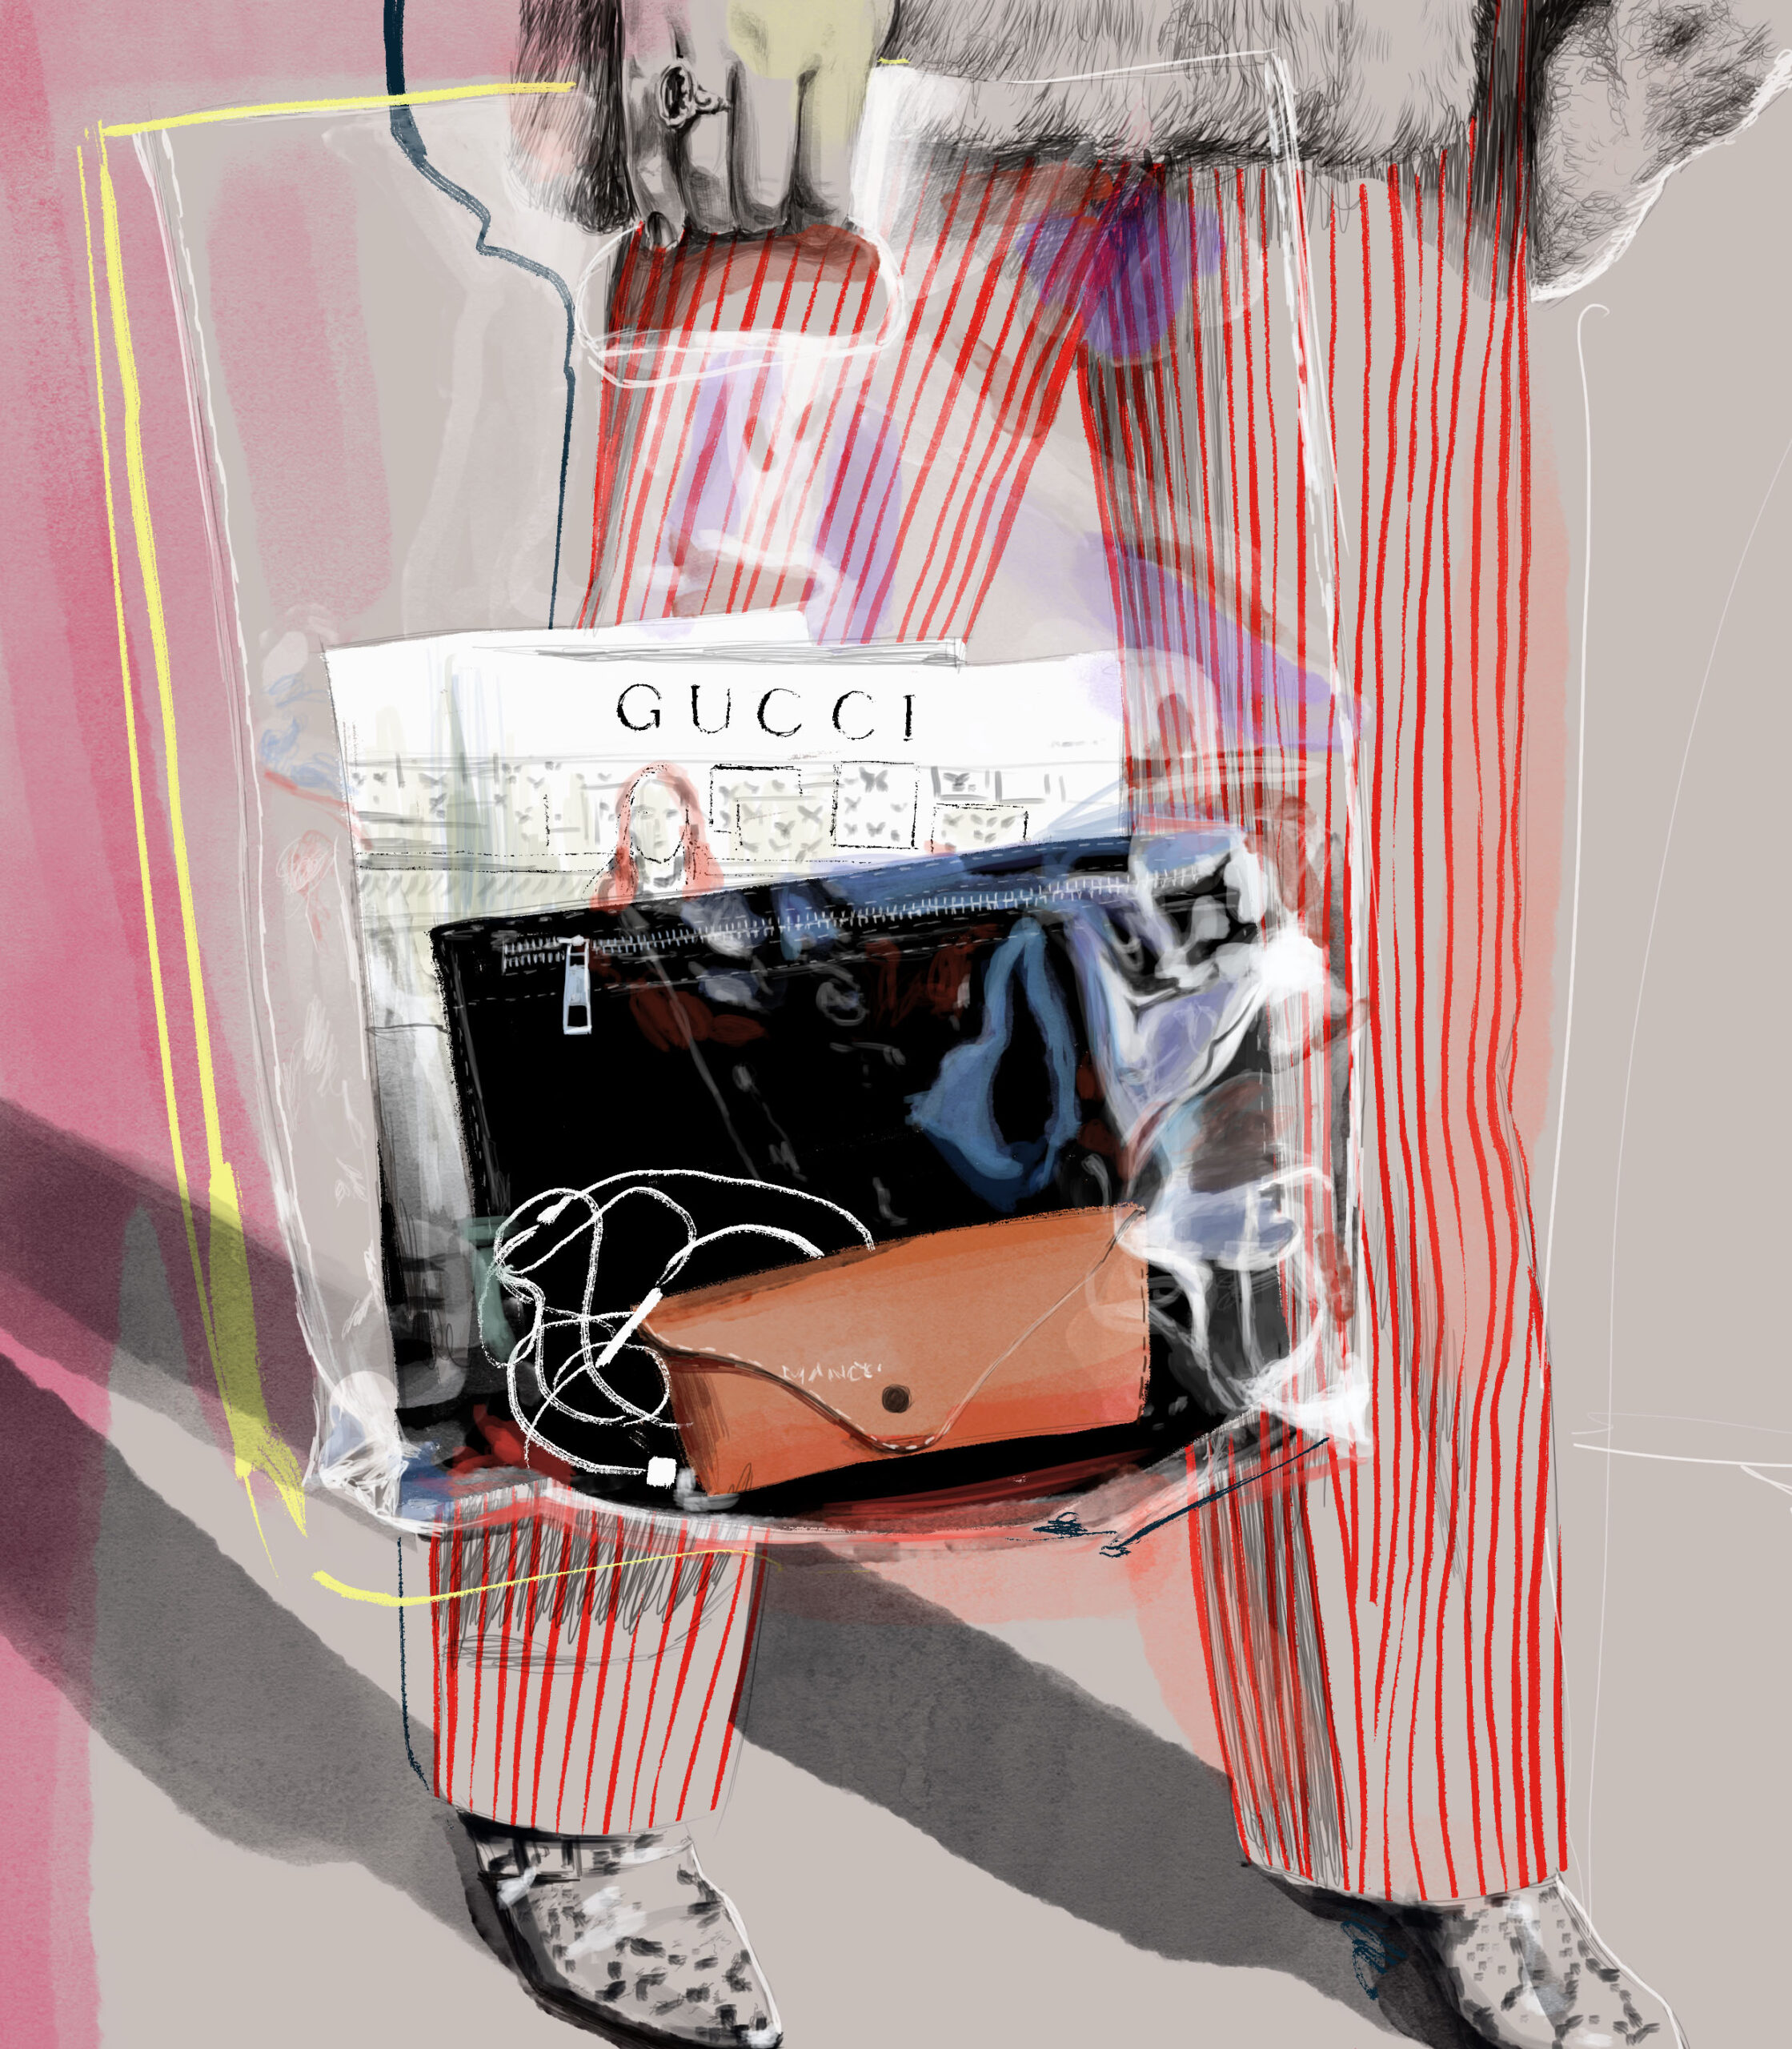 Gucci Stuff